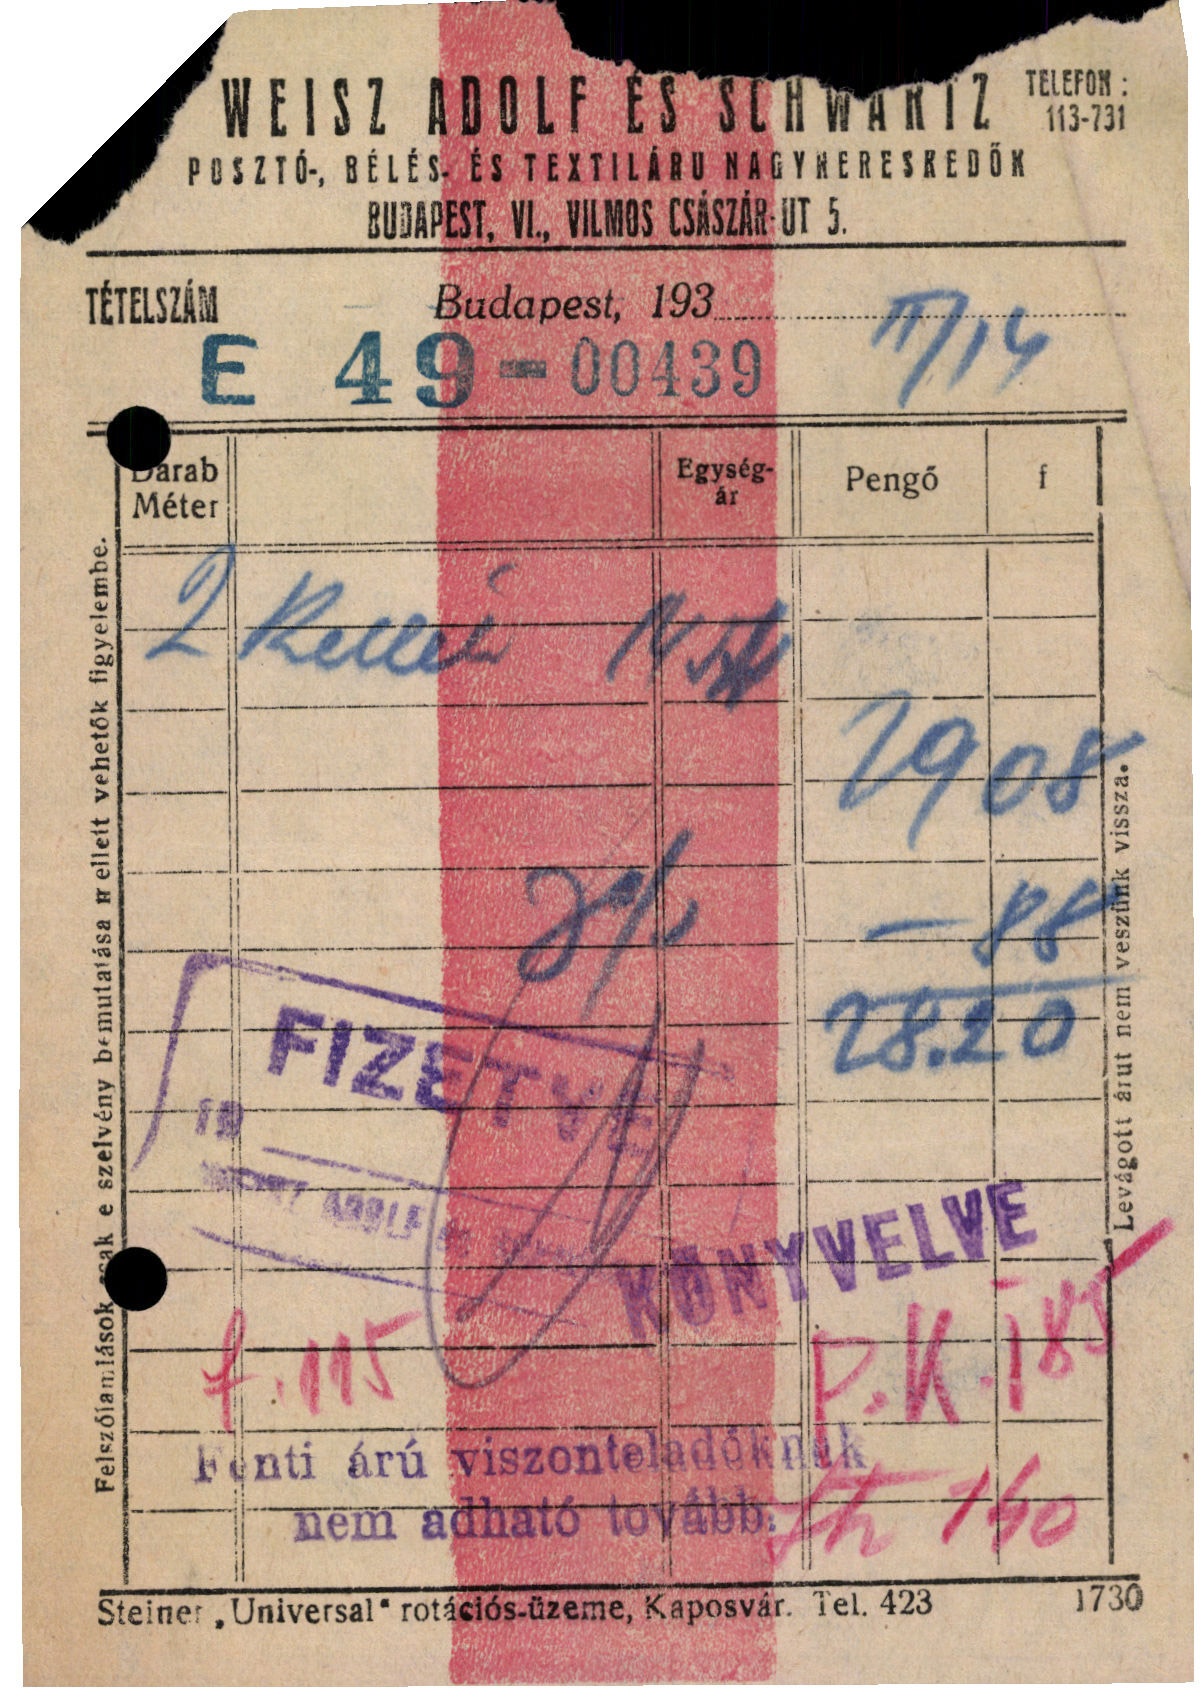 Weisz Adolf és Schwartz posztó-, bélés- és textiláru nagykereskedők (Magyar Kereskedelmi és Vendéglátóipari Múzeum CC BY-NC-SA)